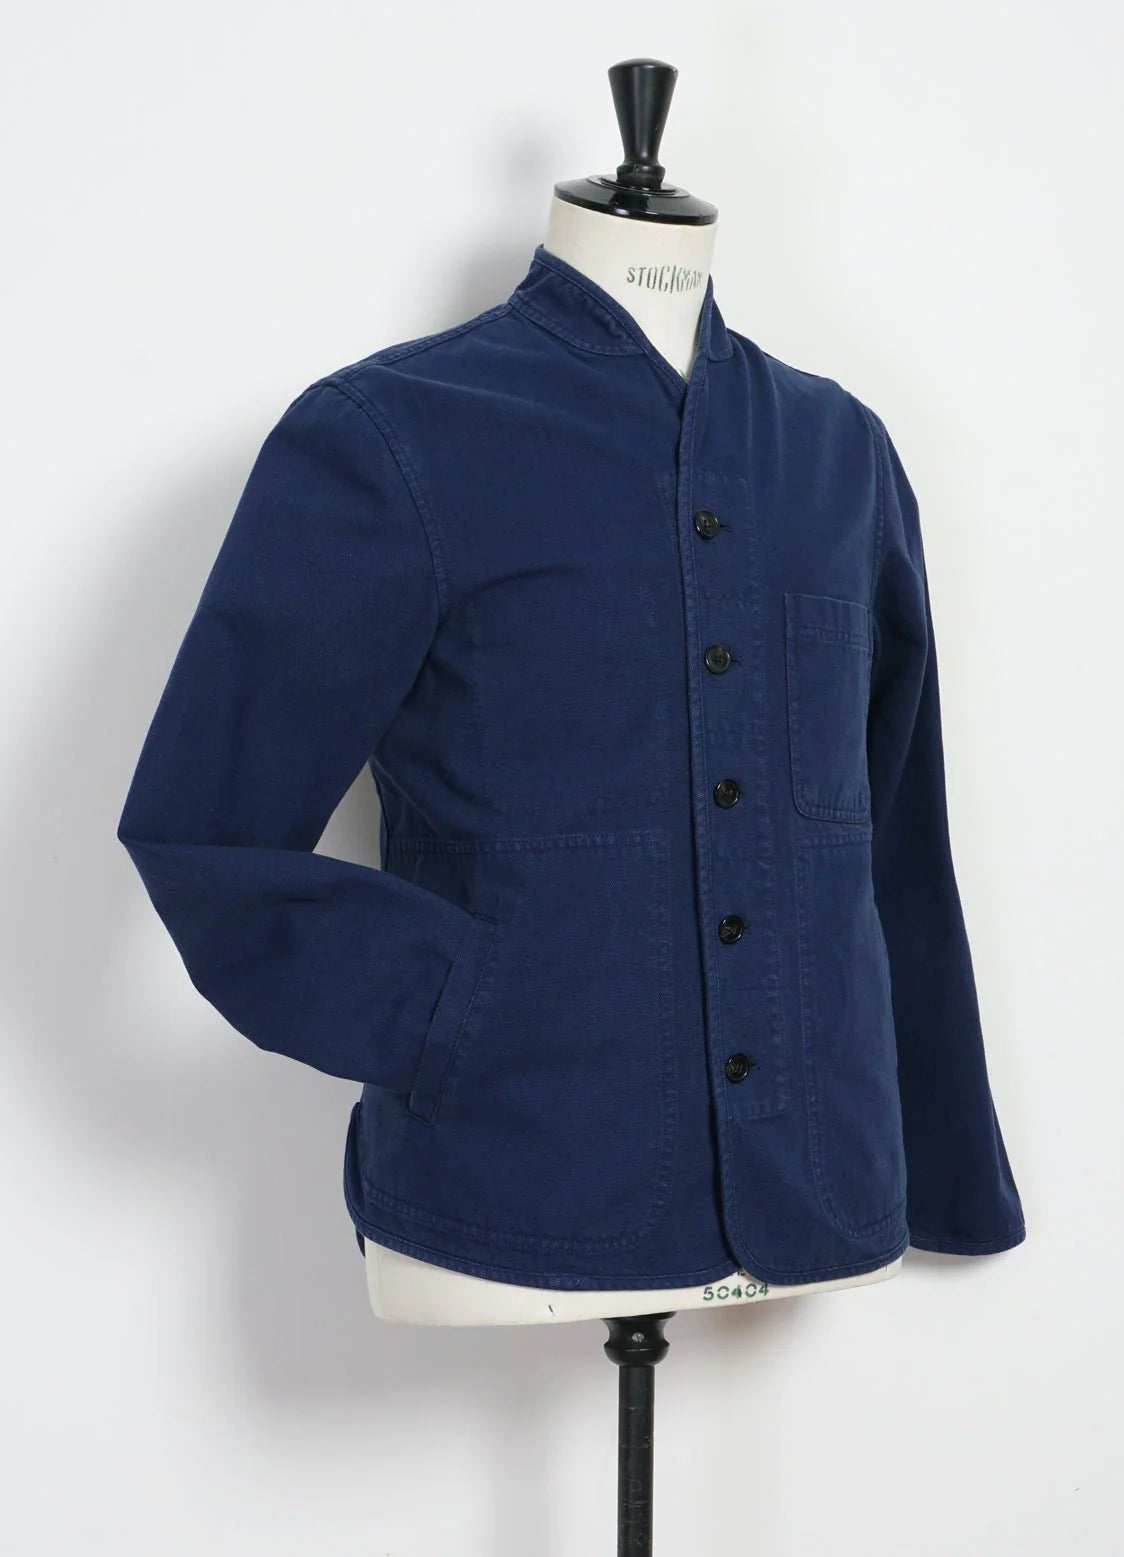 Hansen Garments Erling Canvas Work Jacket in blue